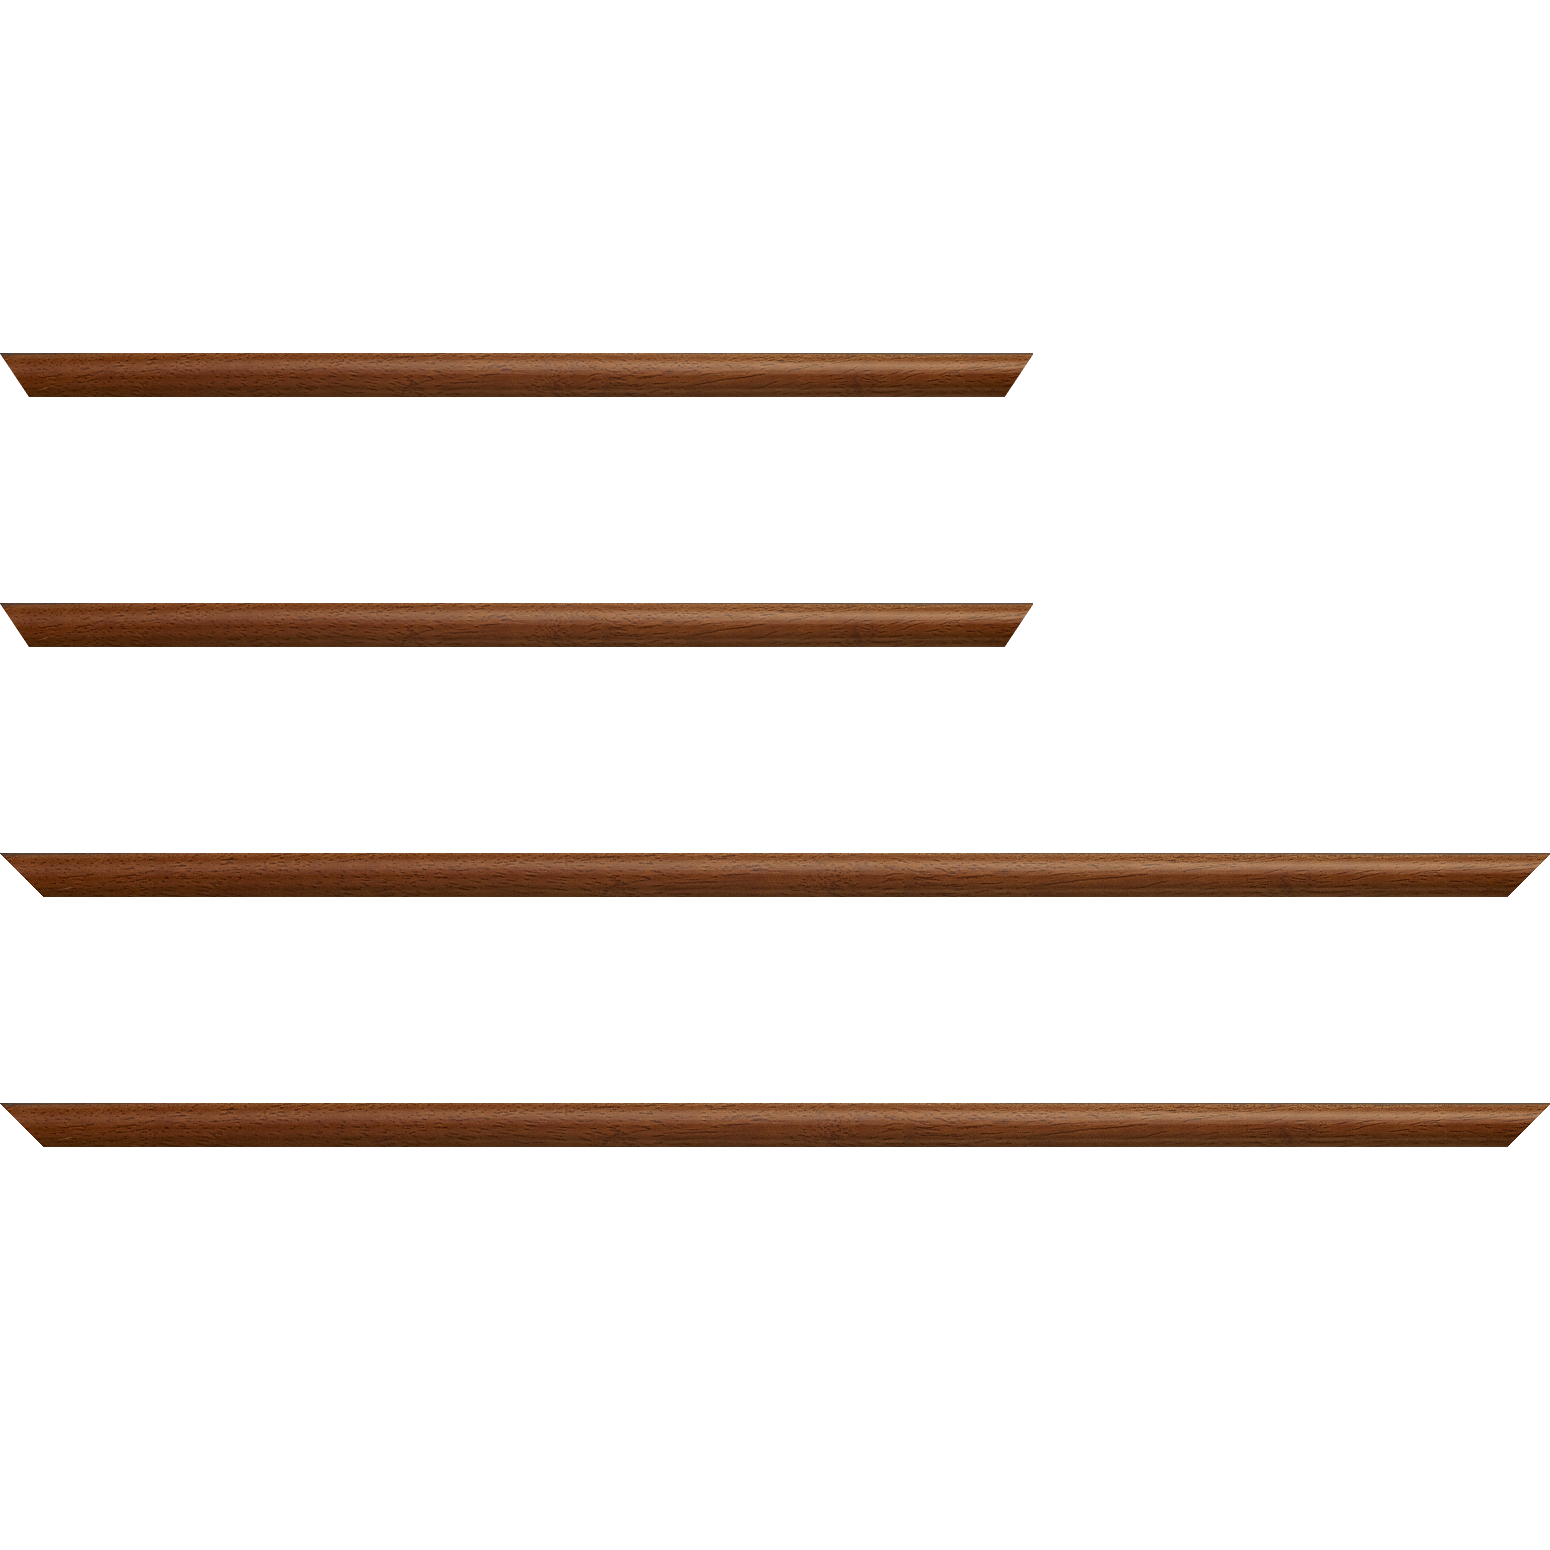 Baguette bois profil demi rond largeur 1.5cm couleur marron ton bois extérieur ébène - 24x30